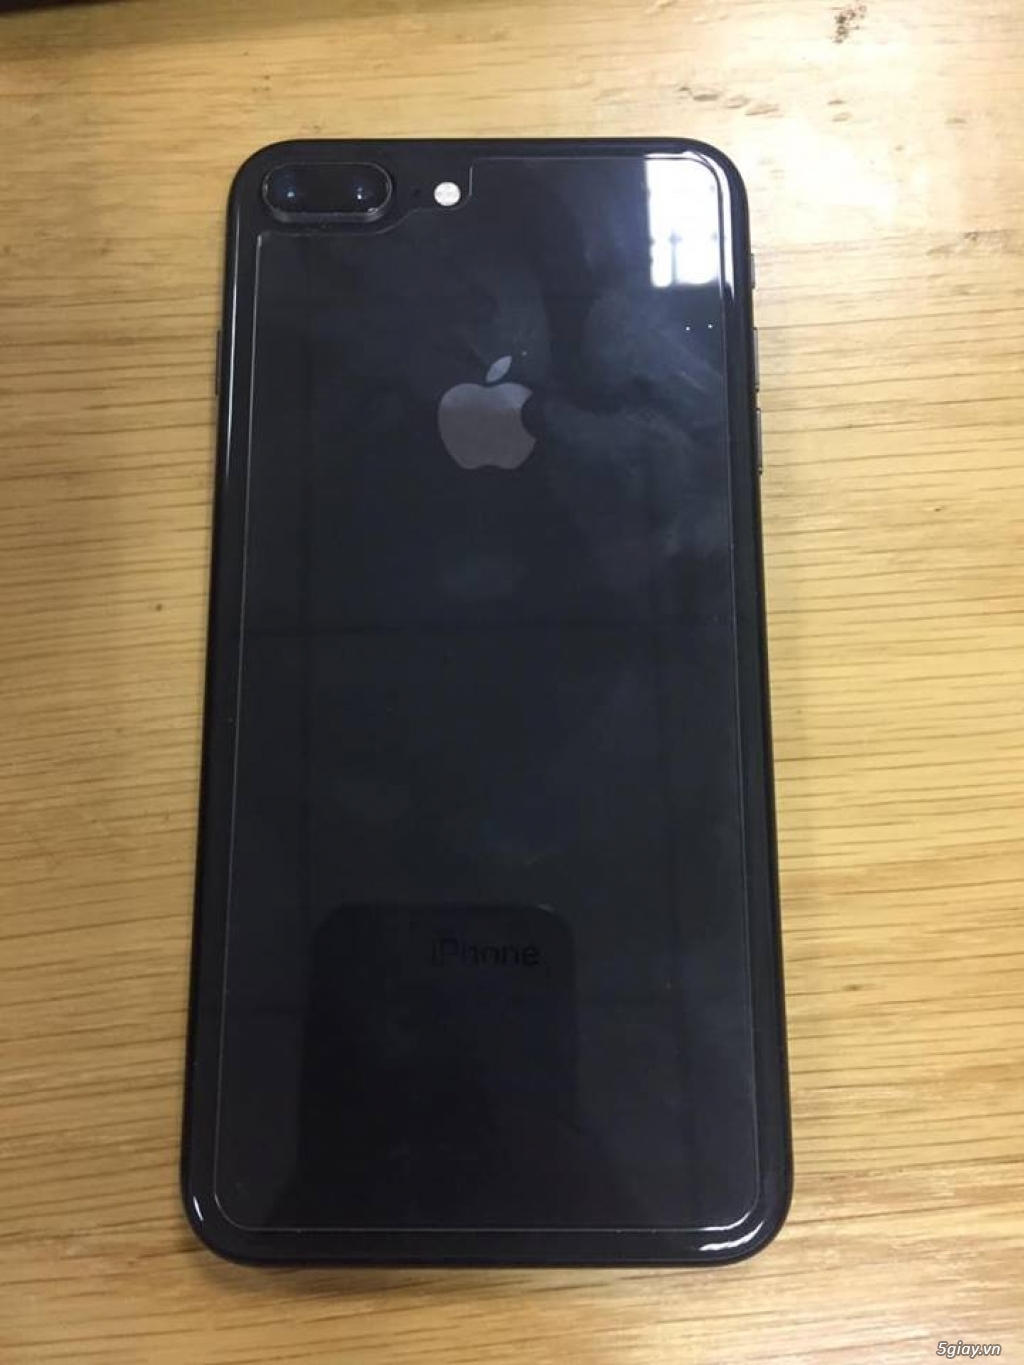 iPhone 8 Plus màu đen: Chiếc iPhone 8 Plus màu đen vô cùng sang trọng và đẳng cấp. Hãy xem thử hình ảnh để thấy rõ vẻ đẹp của sản phẩm này.